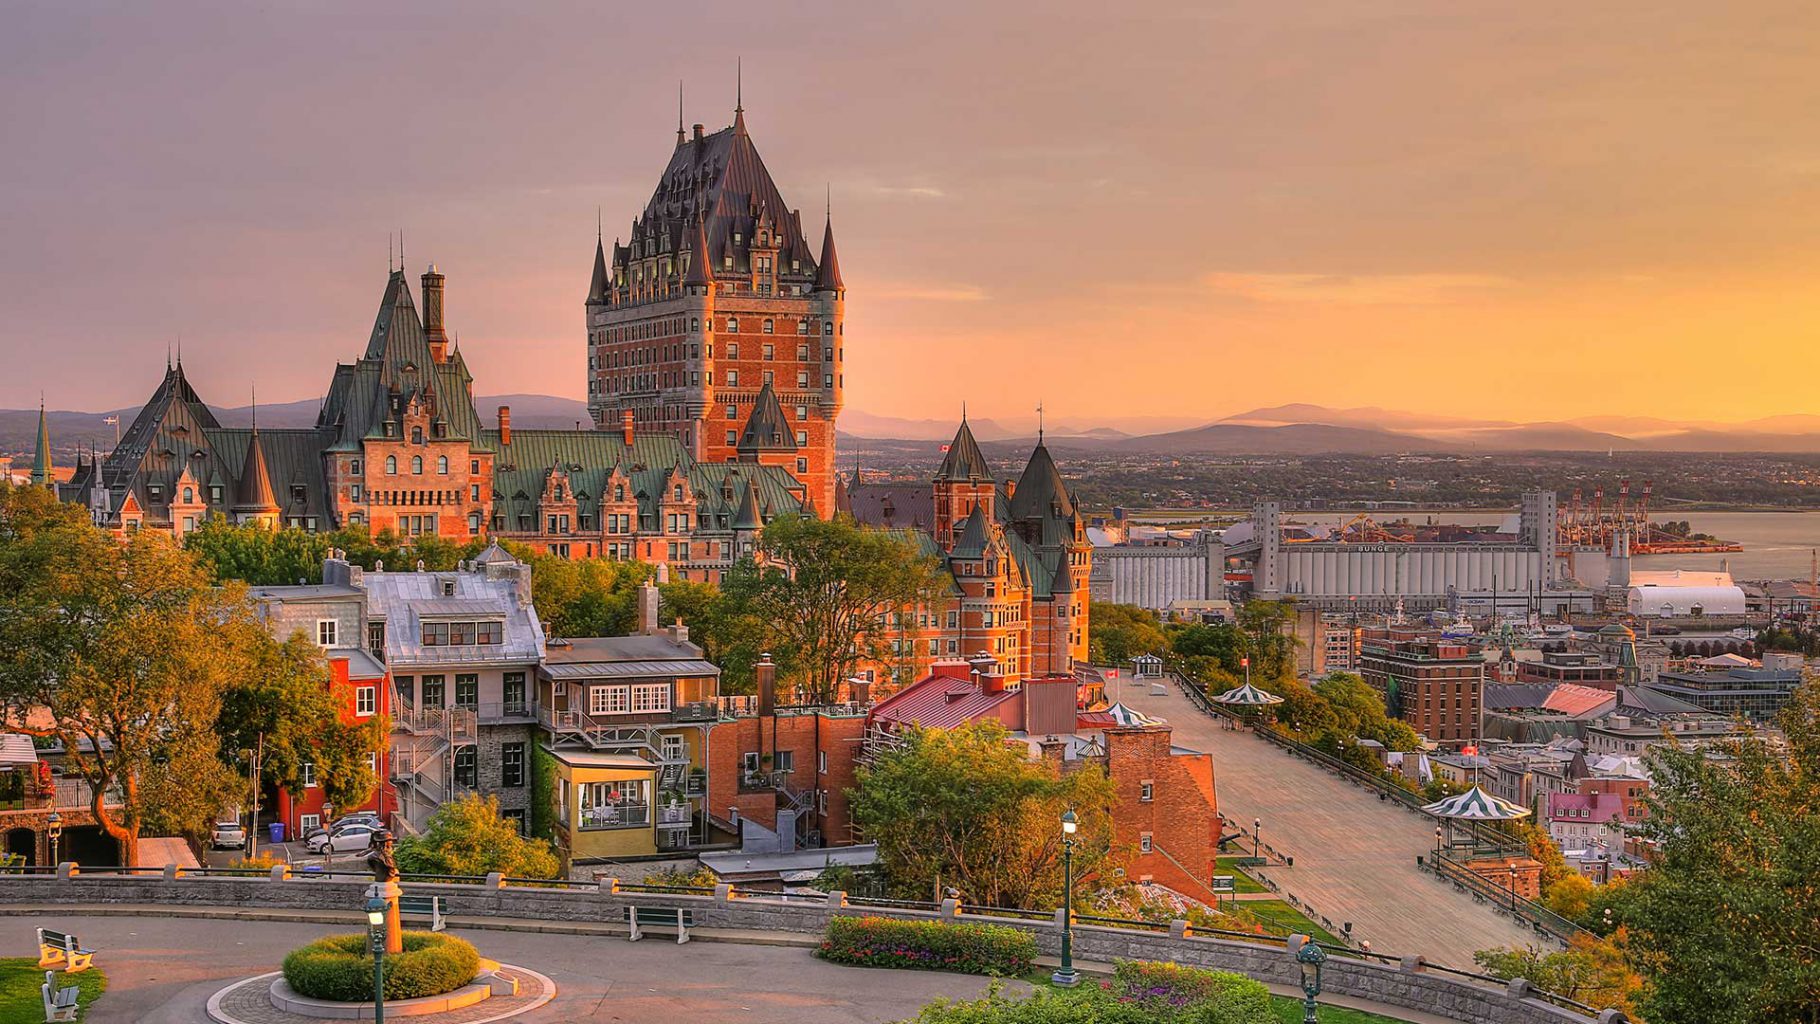 Quebec City Castle